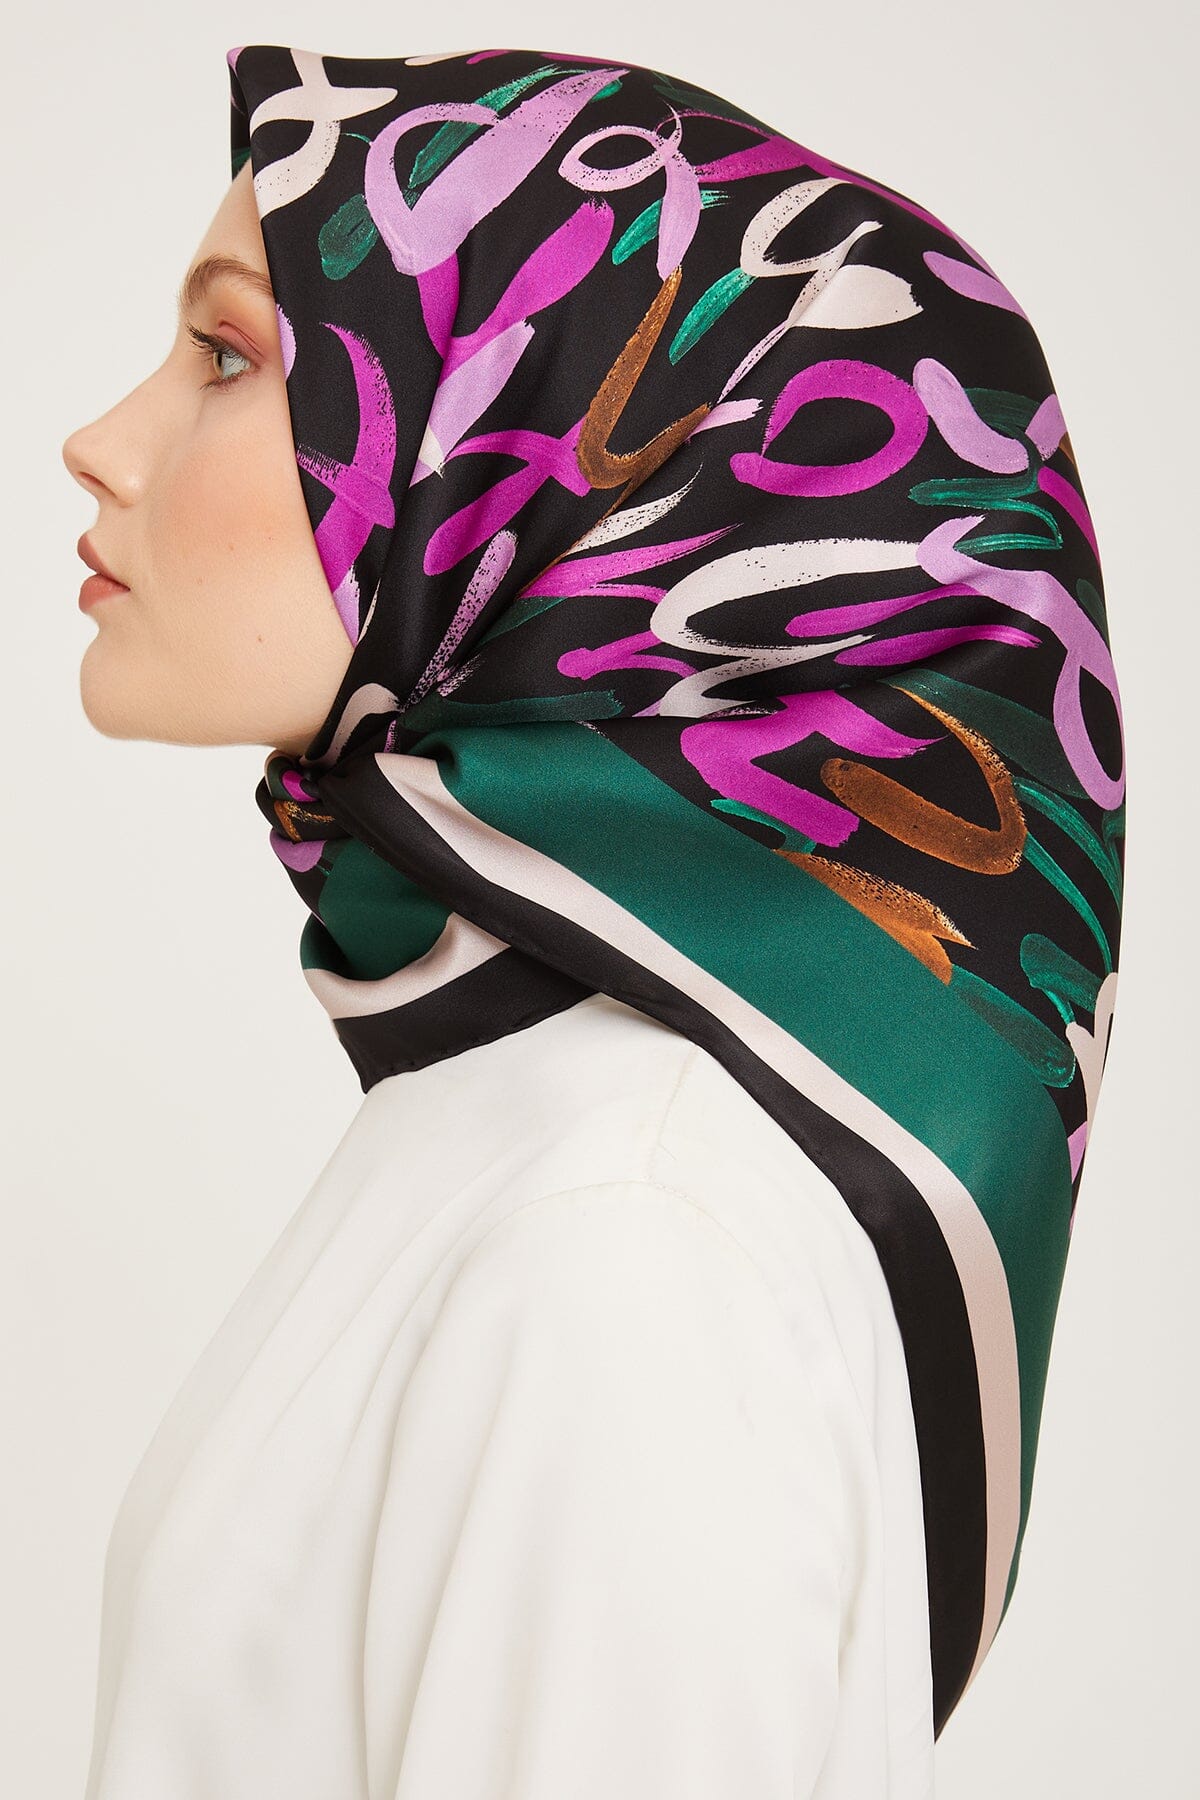 Armine Nudle Designer Silk Scarf #41 Silk Hijabs,Armine Armine 